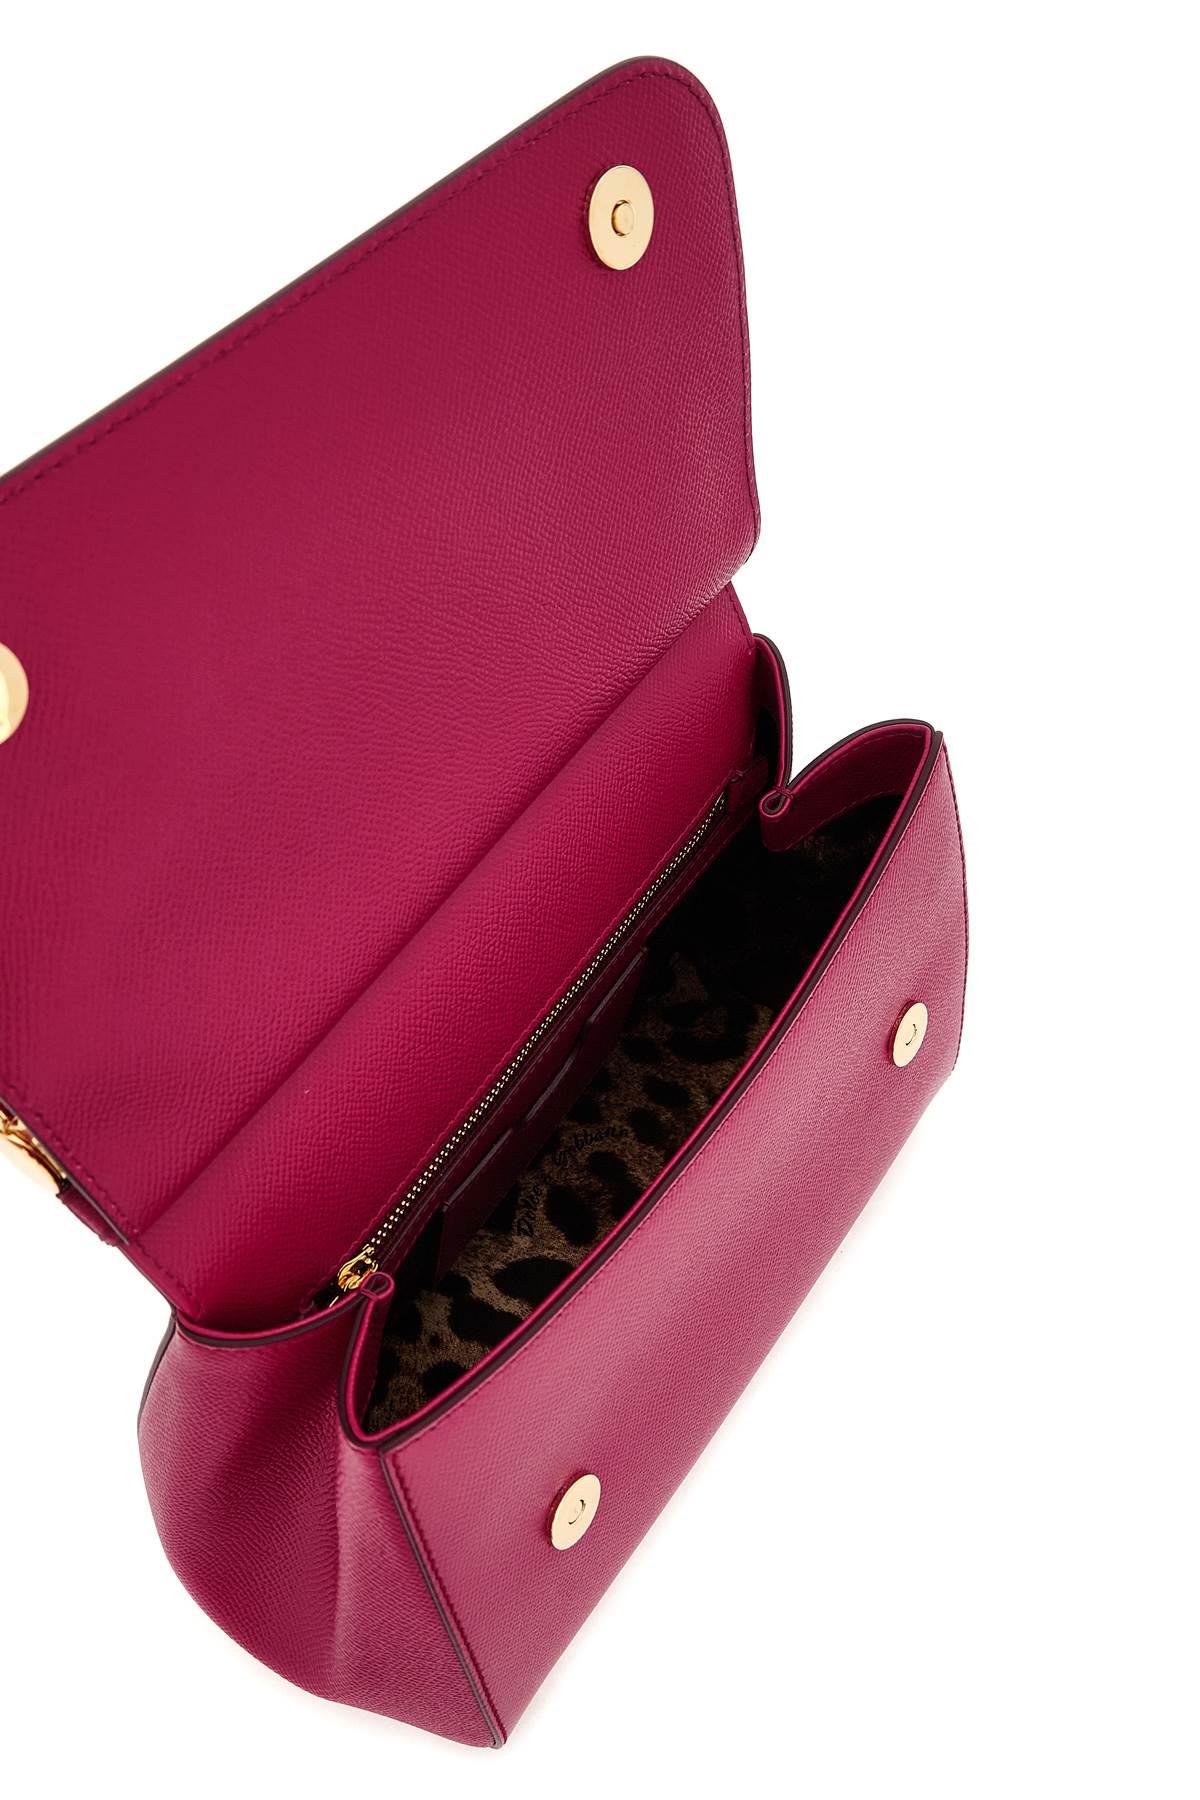 Medium Sicily handbag in Pink, Dolce&Gabbana®